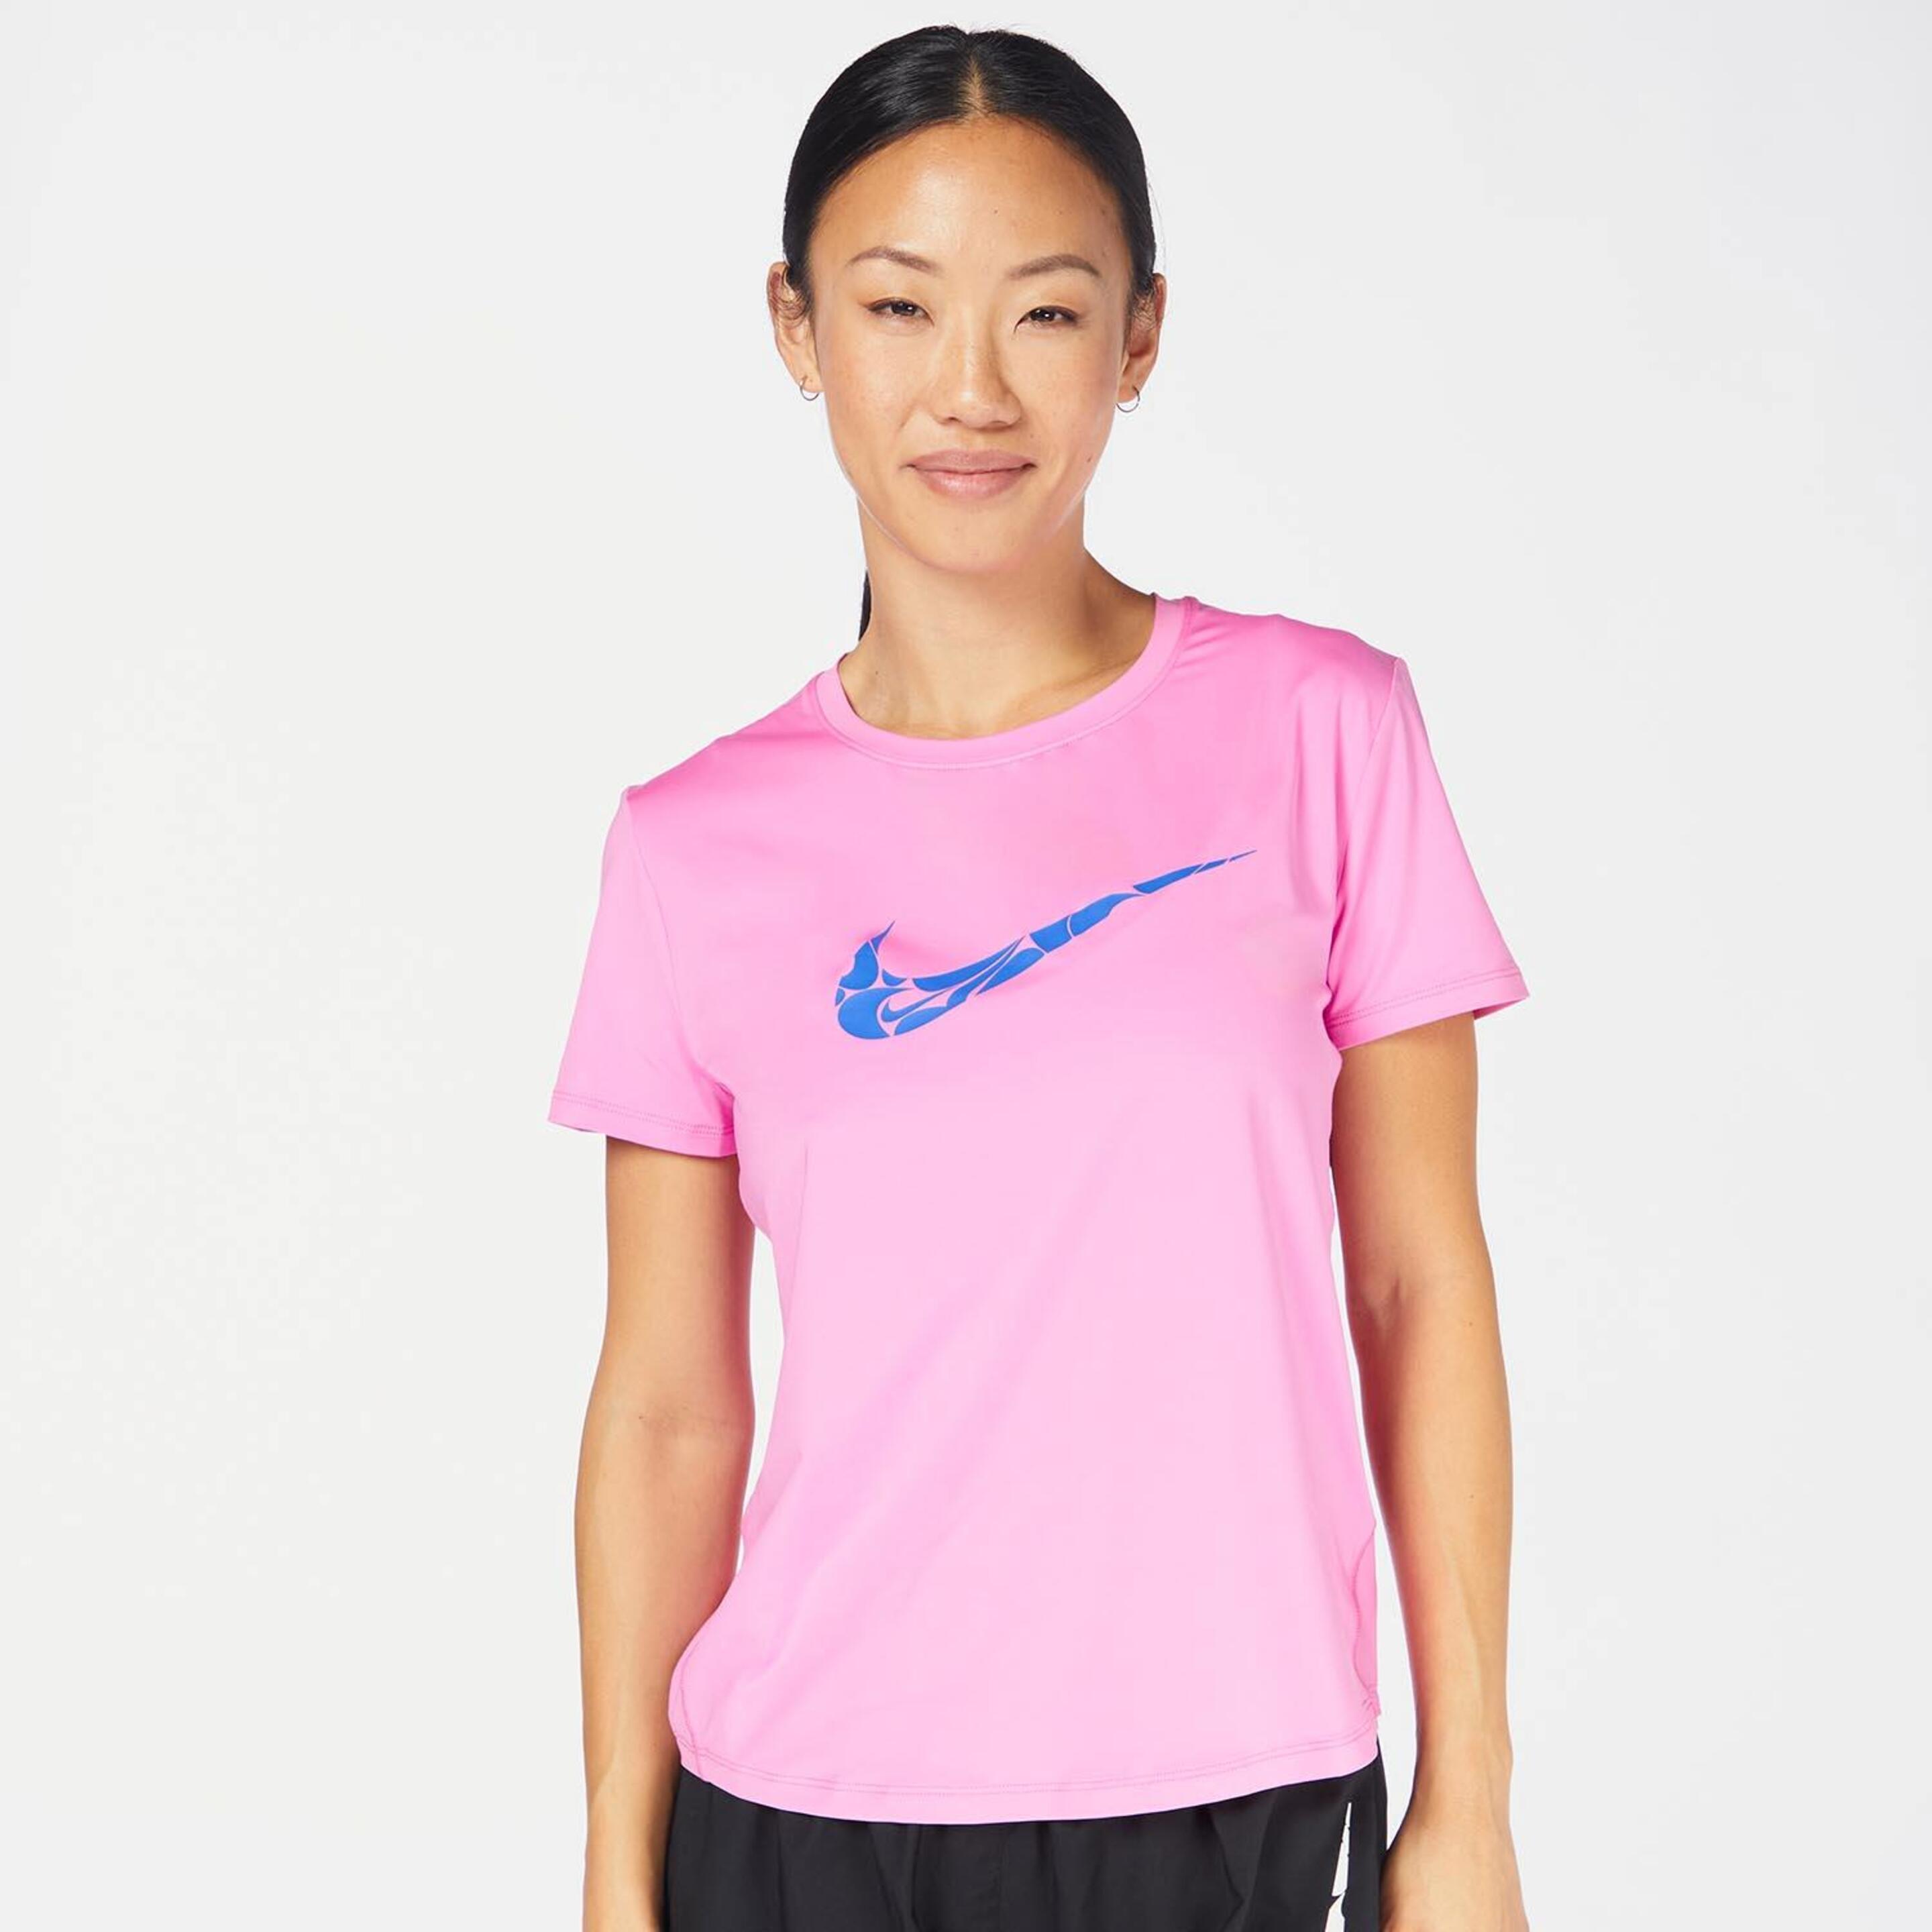 Nike One Swoosh - rosa - Camiseta Running Mujer